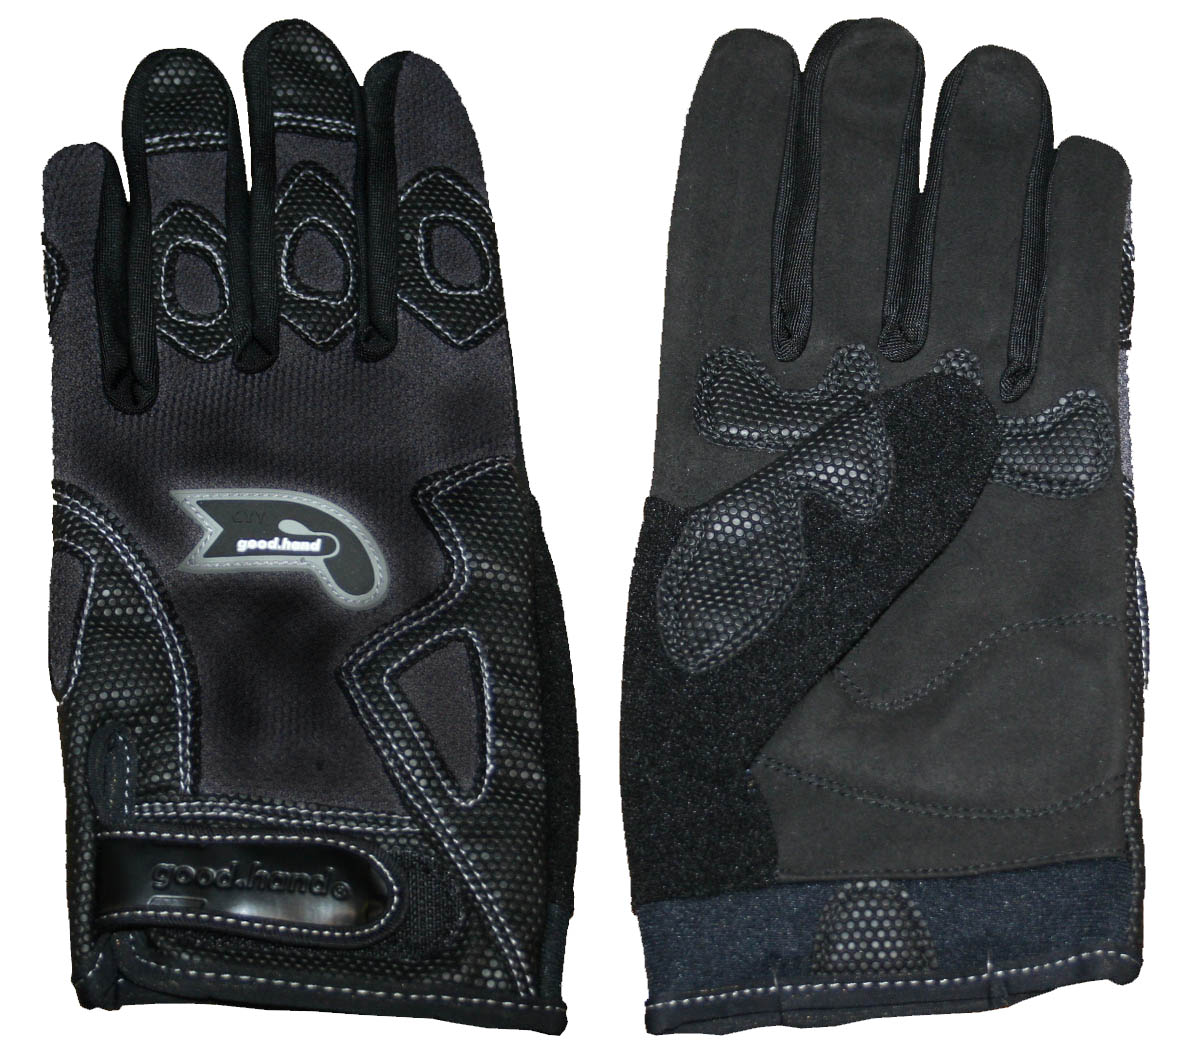 Перчатки полные, XL, черные: верх-эластан с защитными накладками, ладонь-микрофибра, летние.